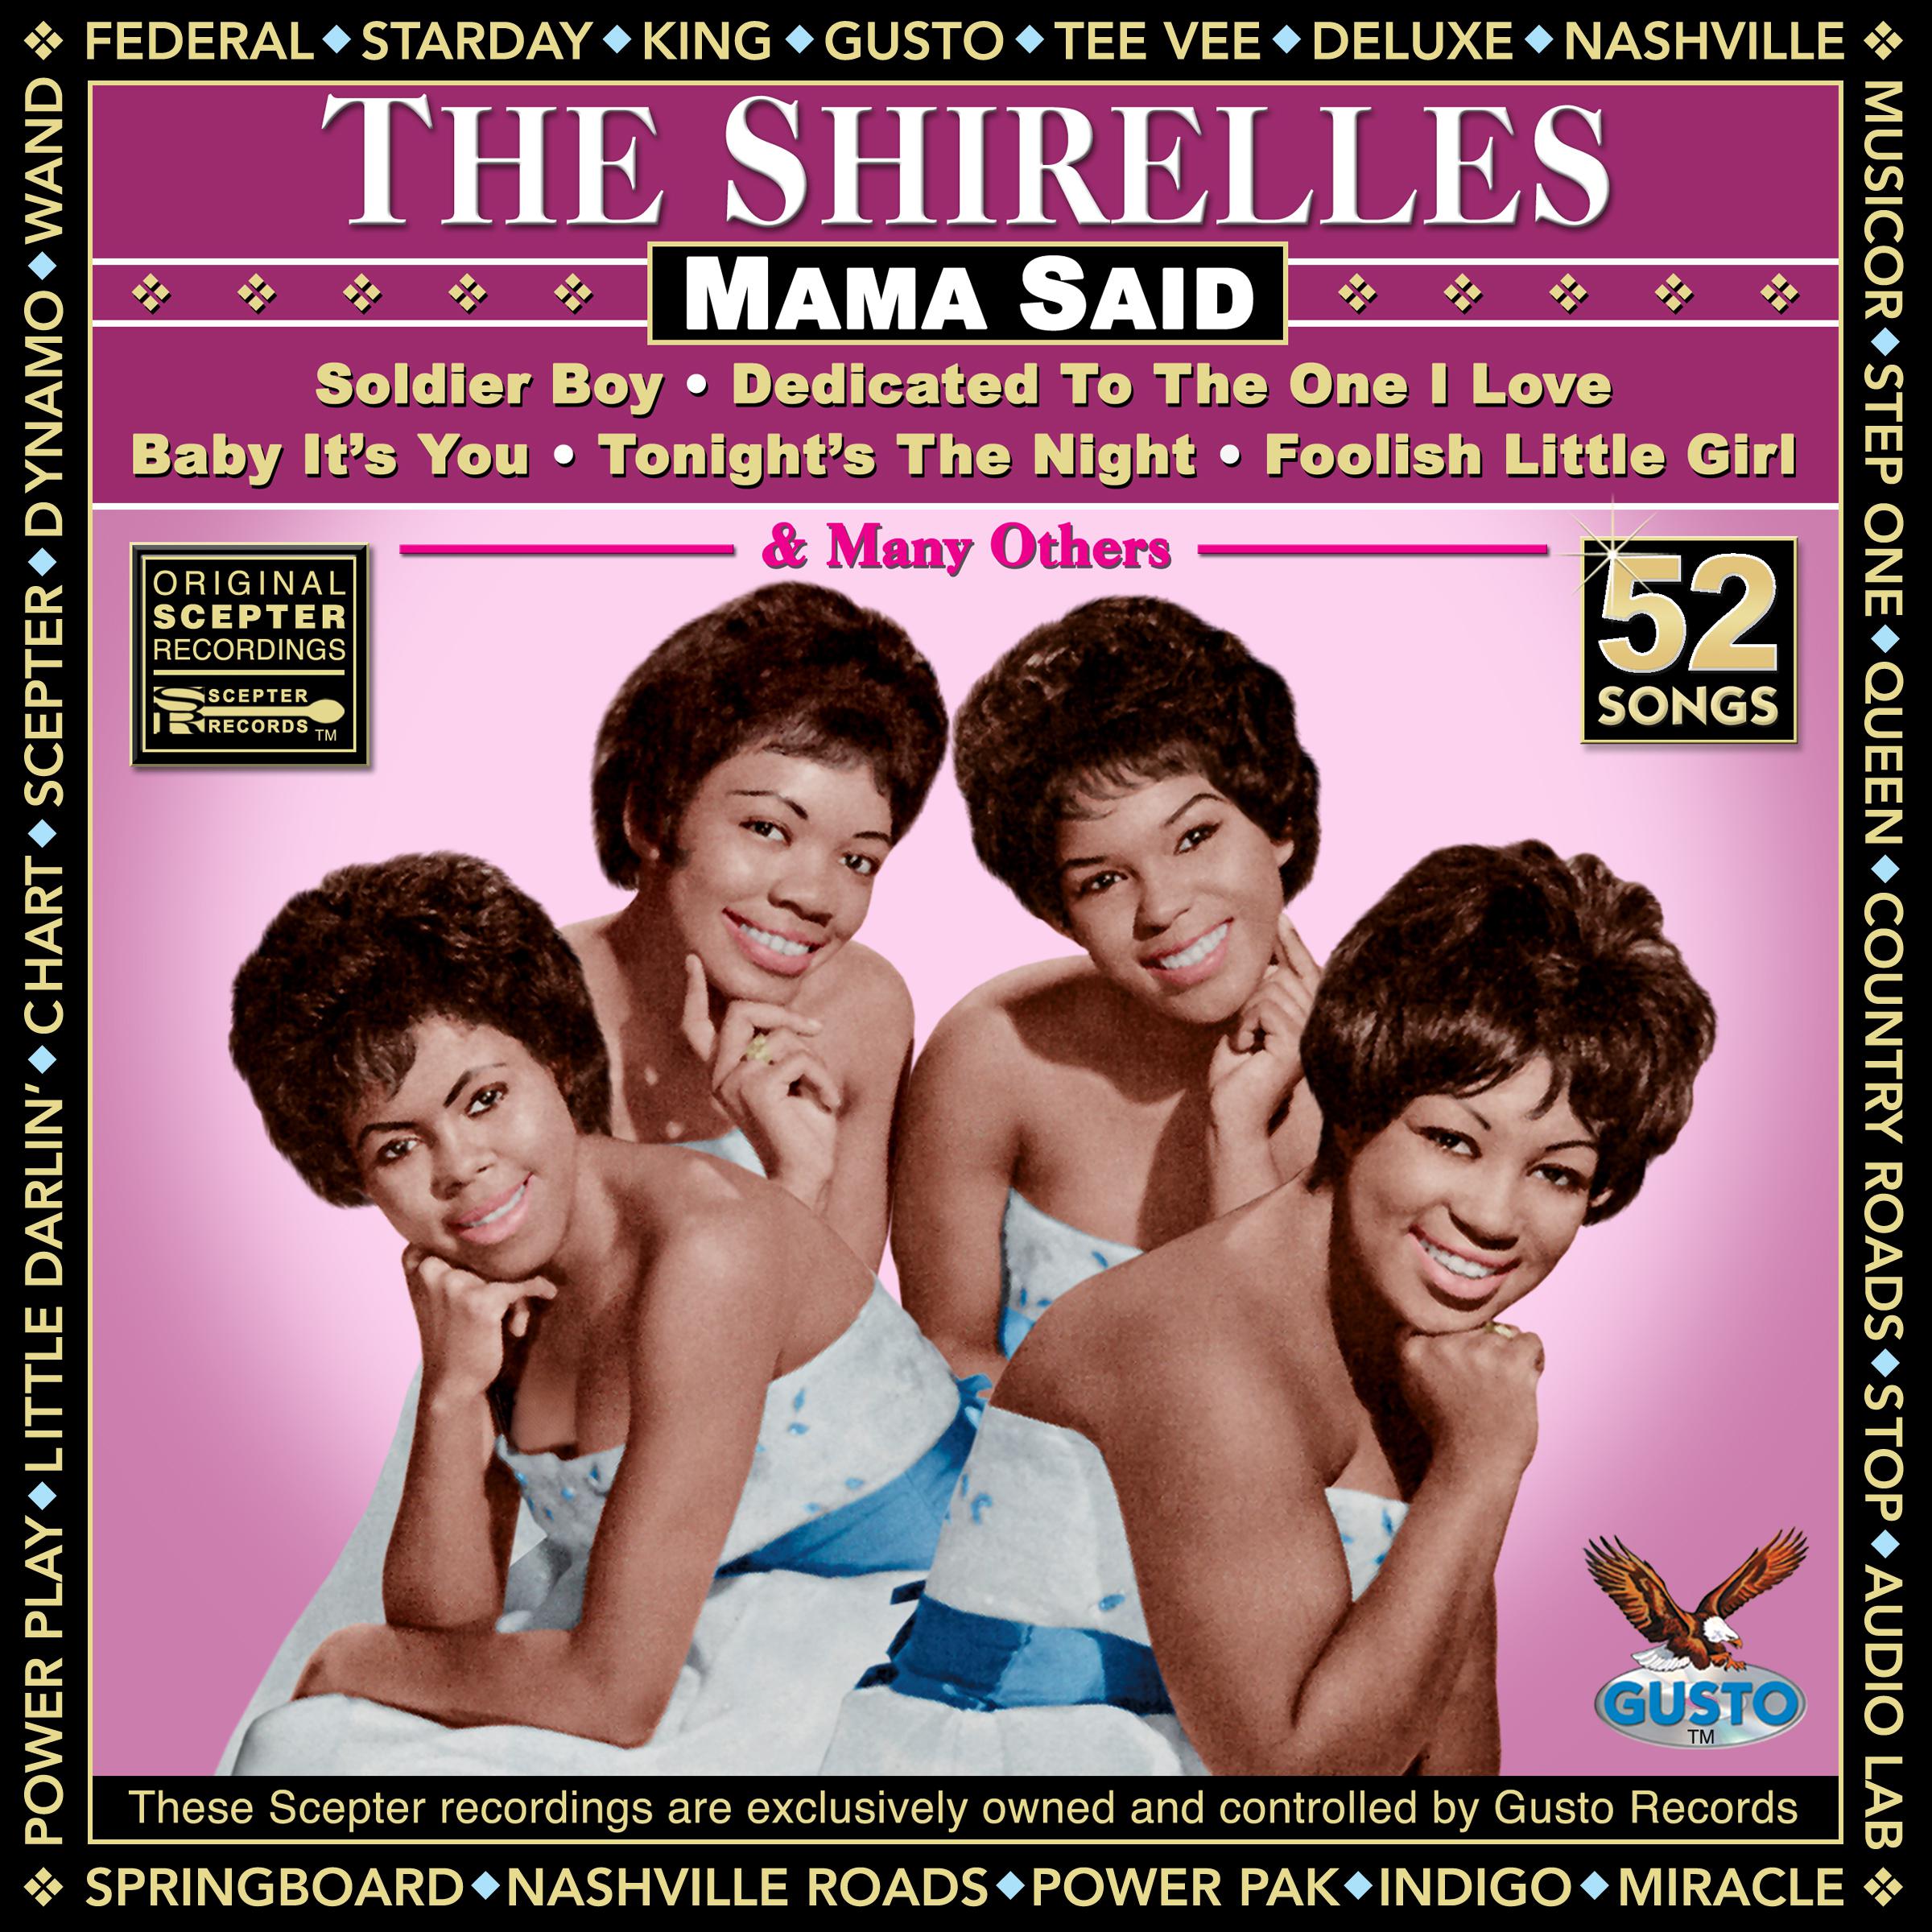 The Shirelles - Boys (Original Scepter Records Recording)